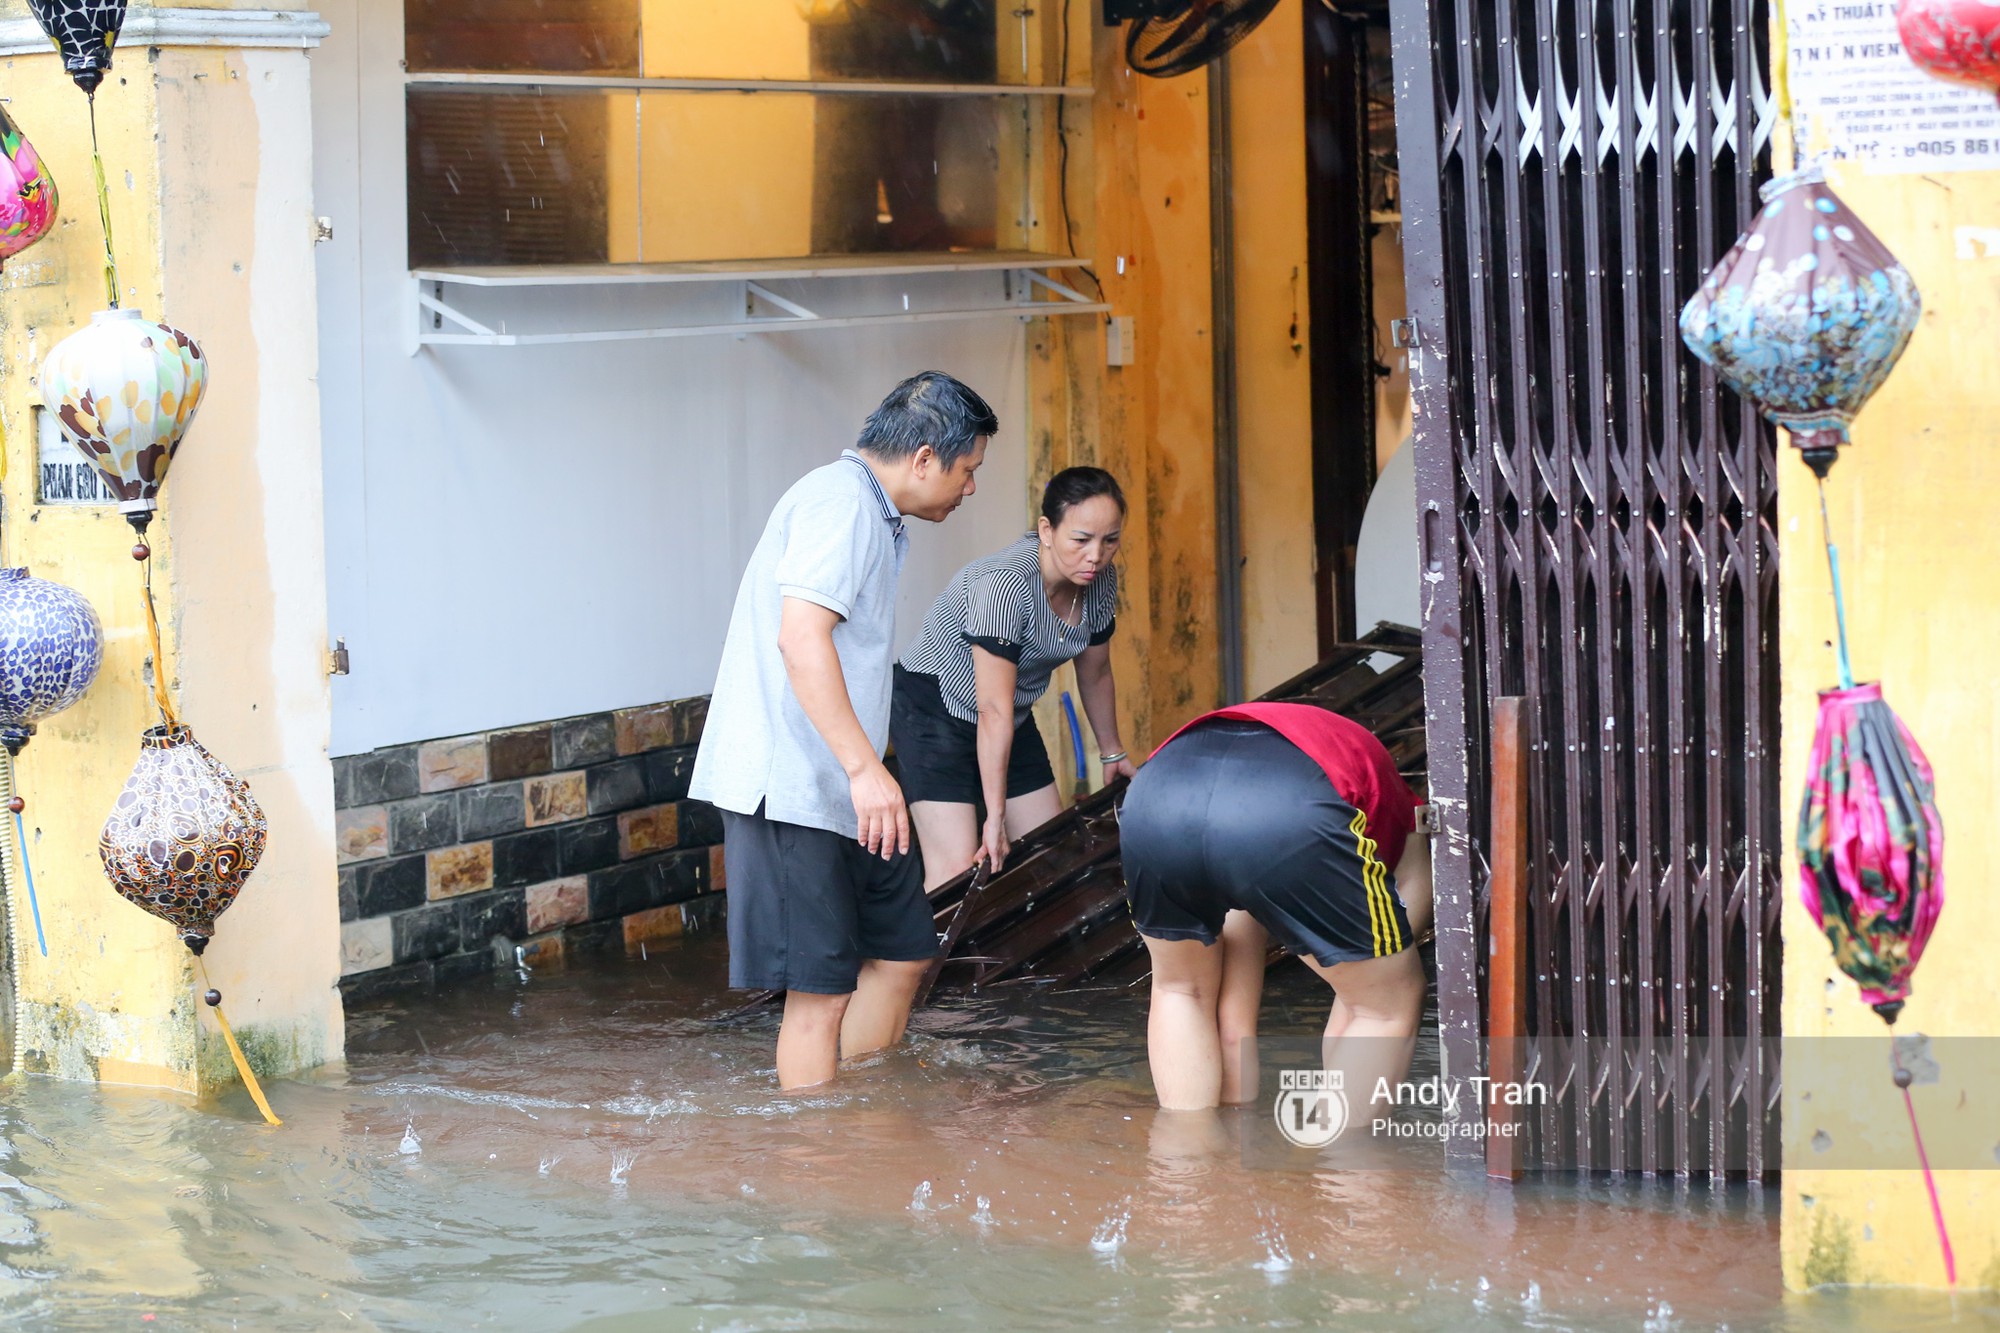 Chùm ảnh: Hội An nước ngập thành sông do ảnh hưởng của bão, người dân và du khách chật vật dùng thuyền bè di chuyển - Ảnh 16.